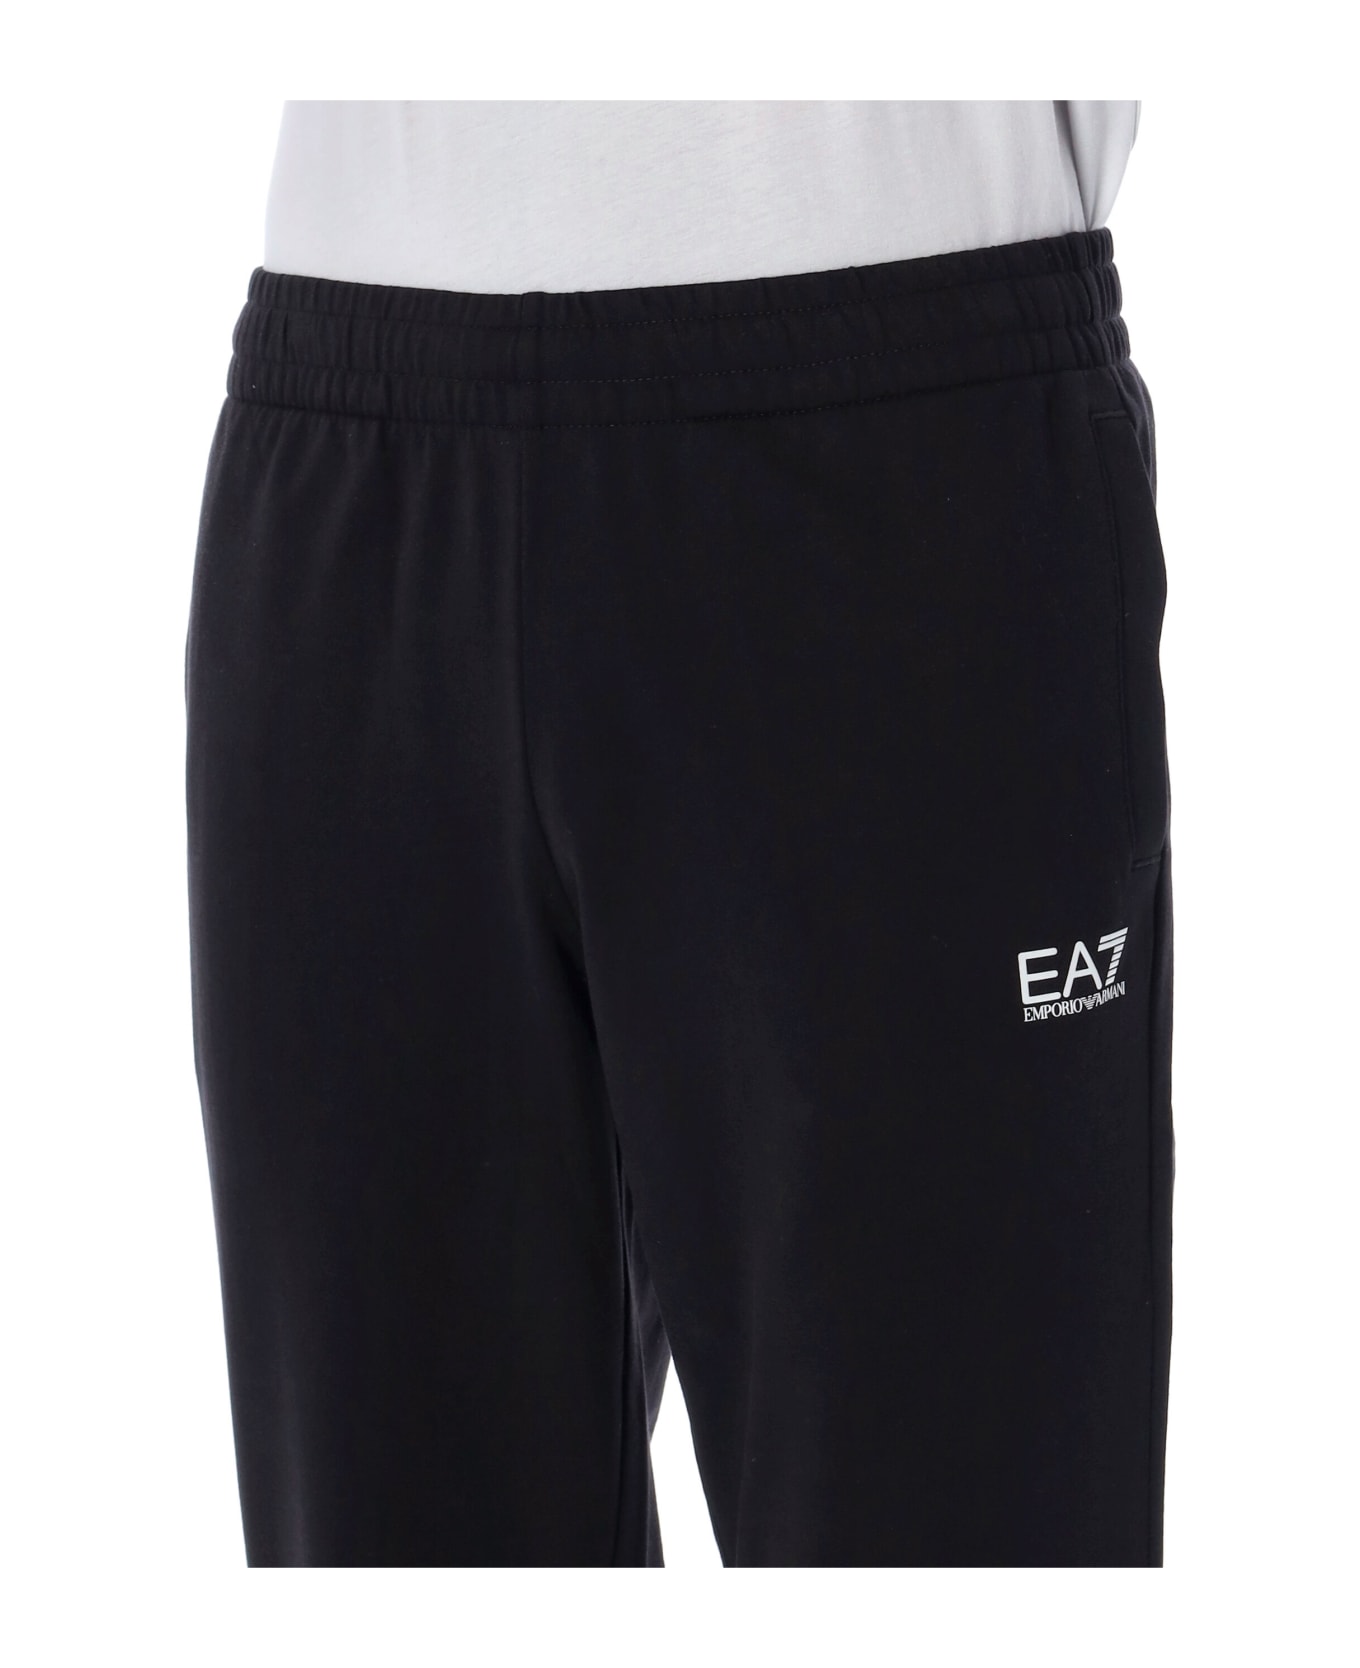 EA7 Core Identity Cotton Joggers - Black